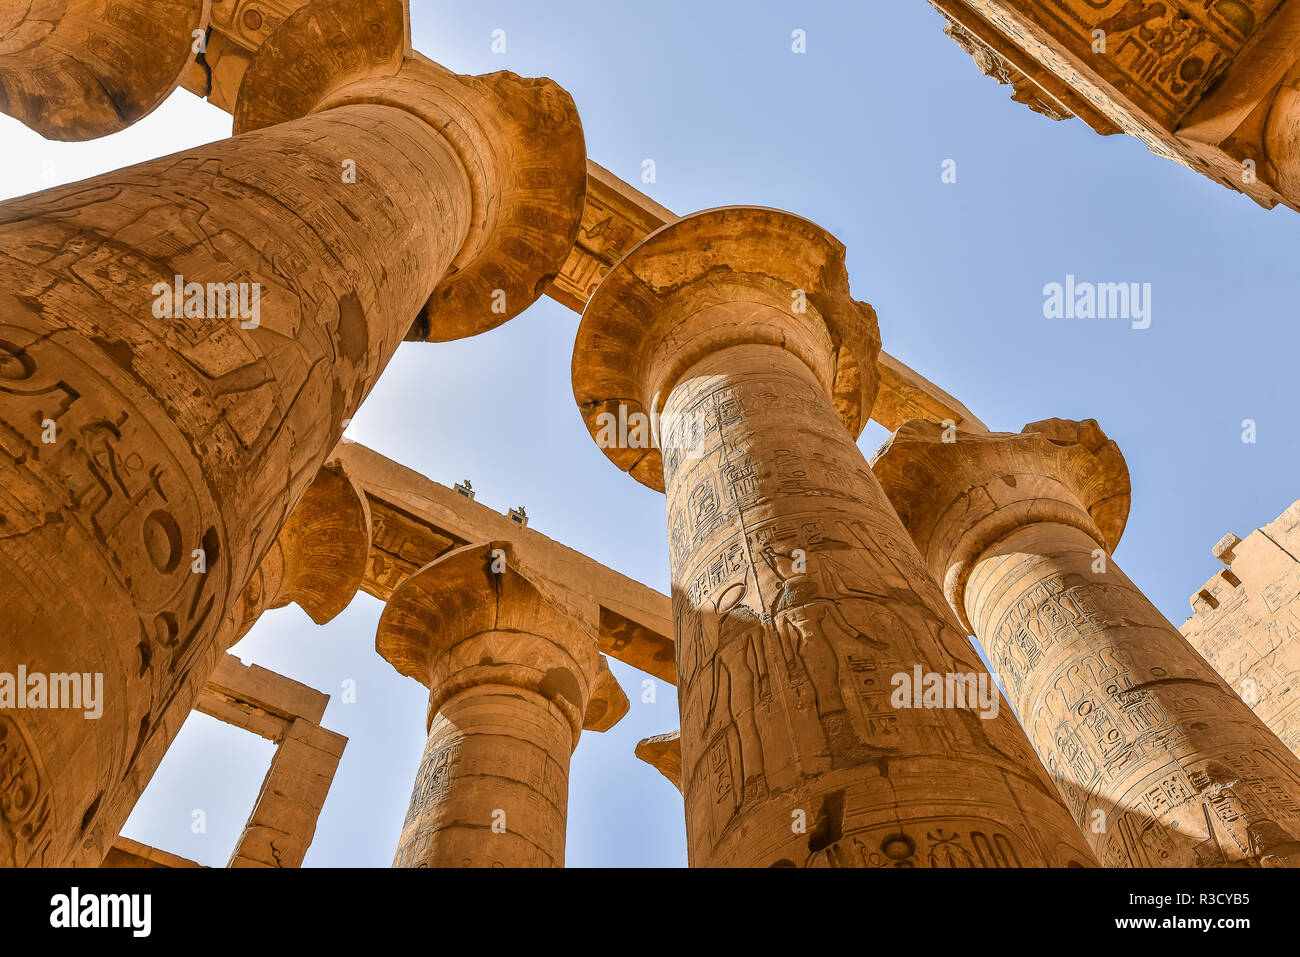 Columnas y cielo azul en la gran sala hipóstila salen en el templo de Amon-Re en Karnak, Egipto, 22 de octubre de 2018 Foto de stock